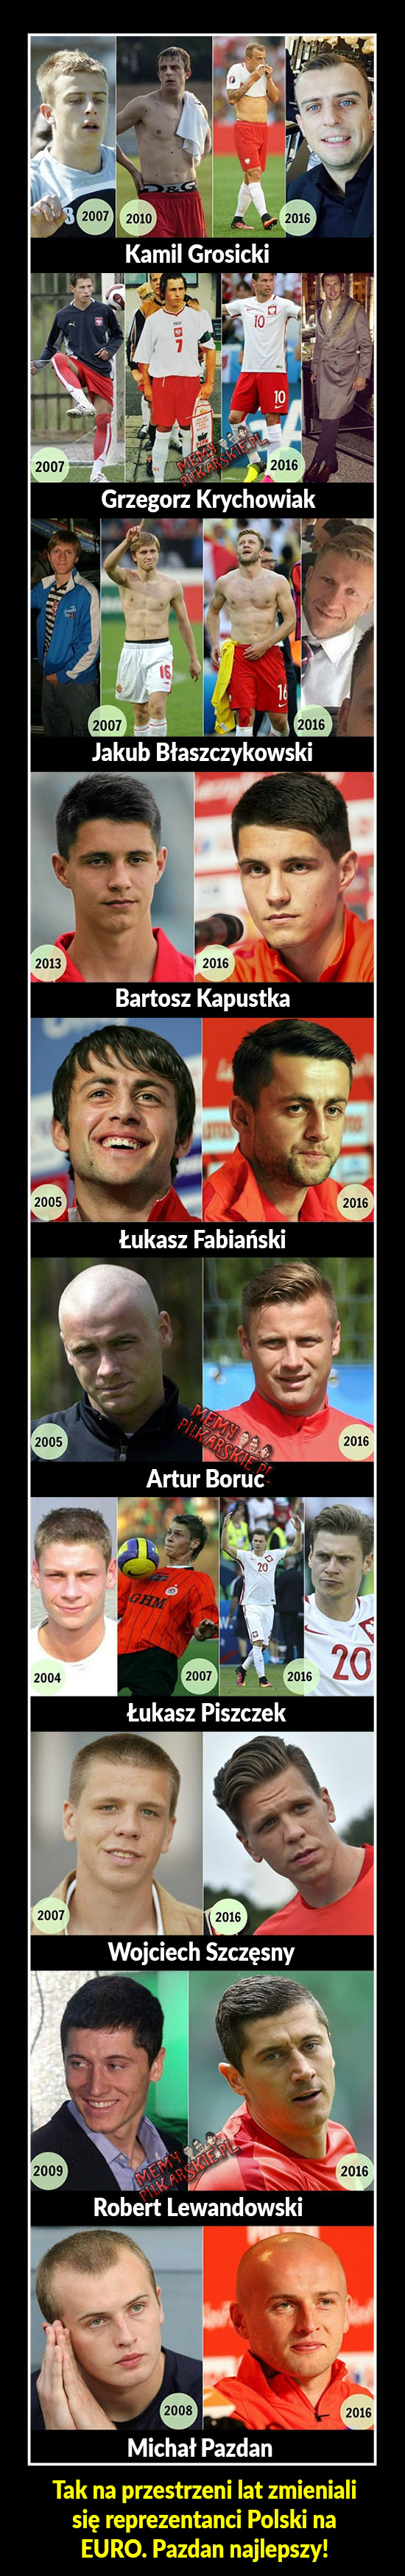 Polscy piłkarze kiedyś i teraz